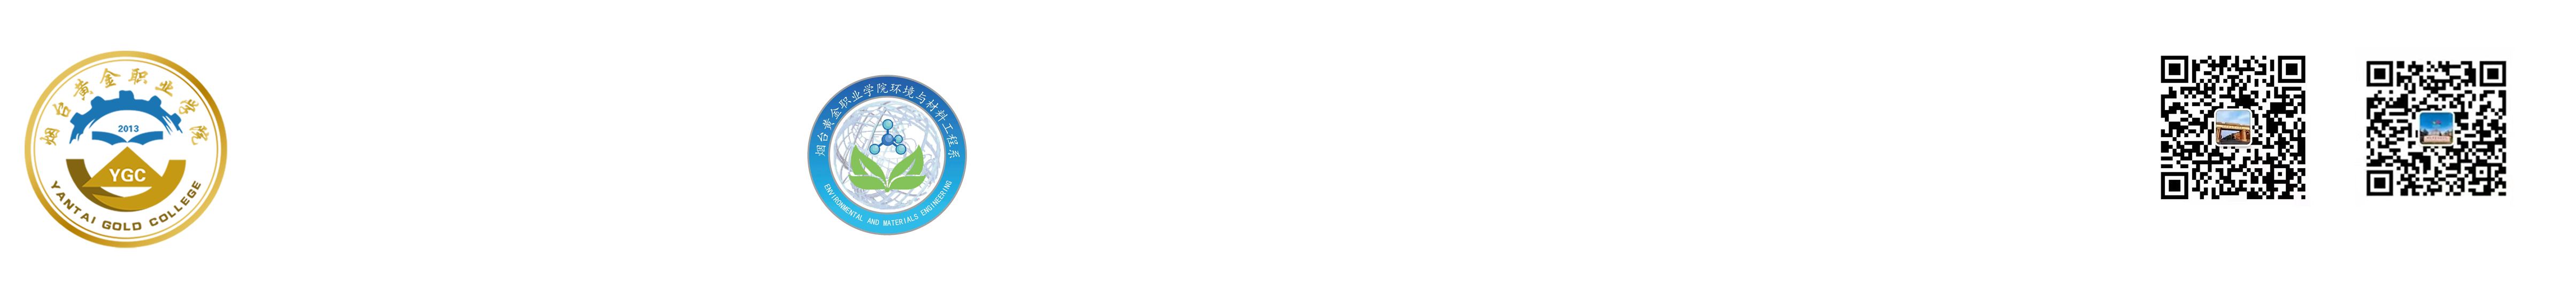 环境与材料工程系